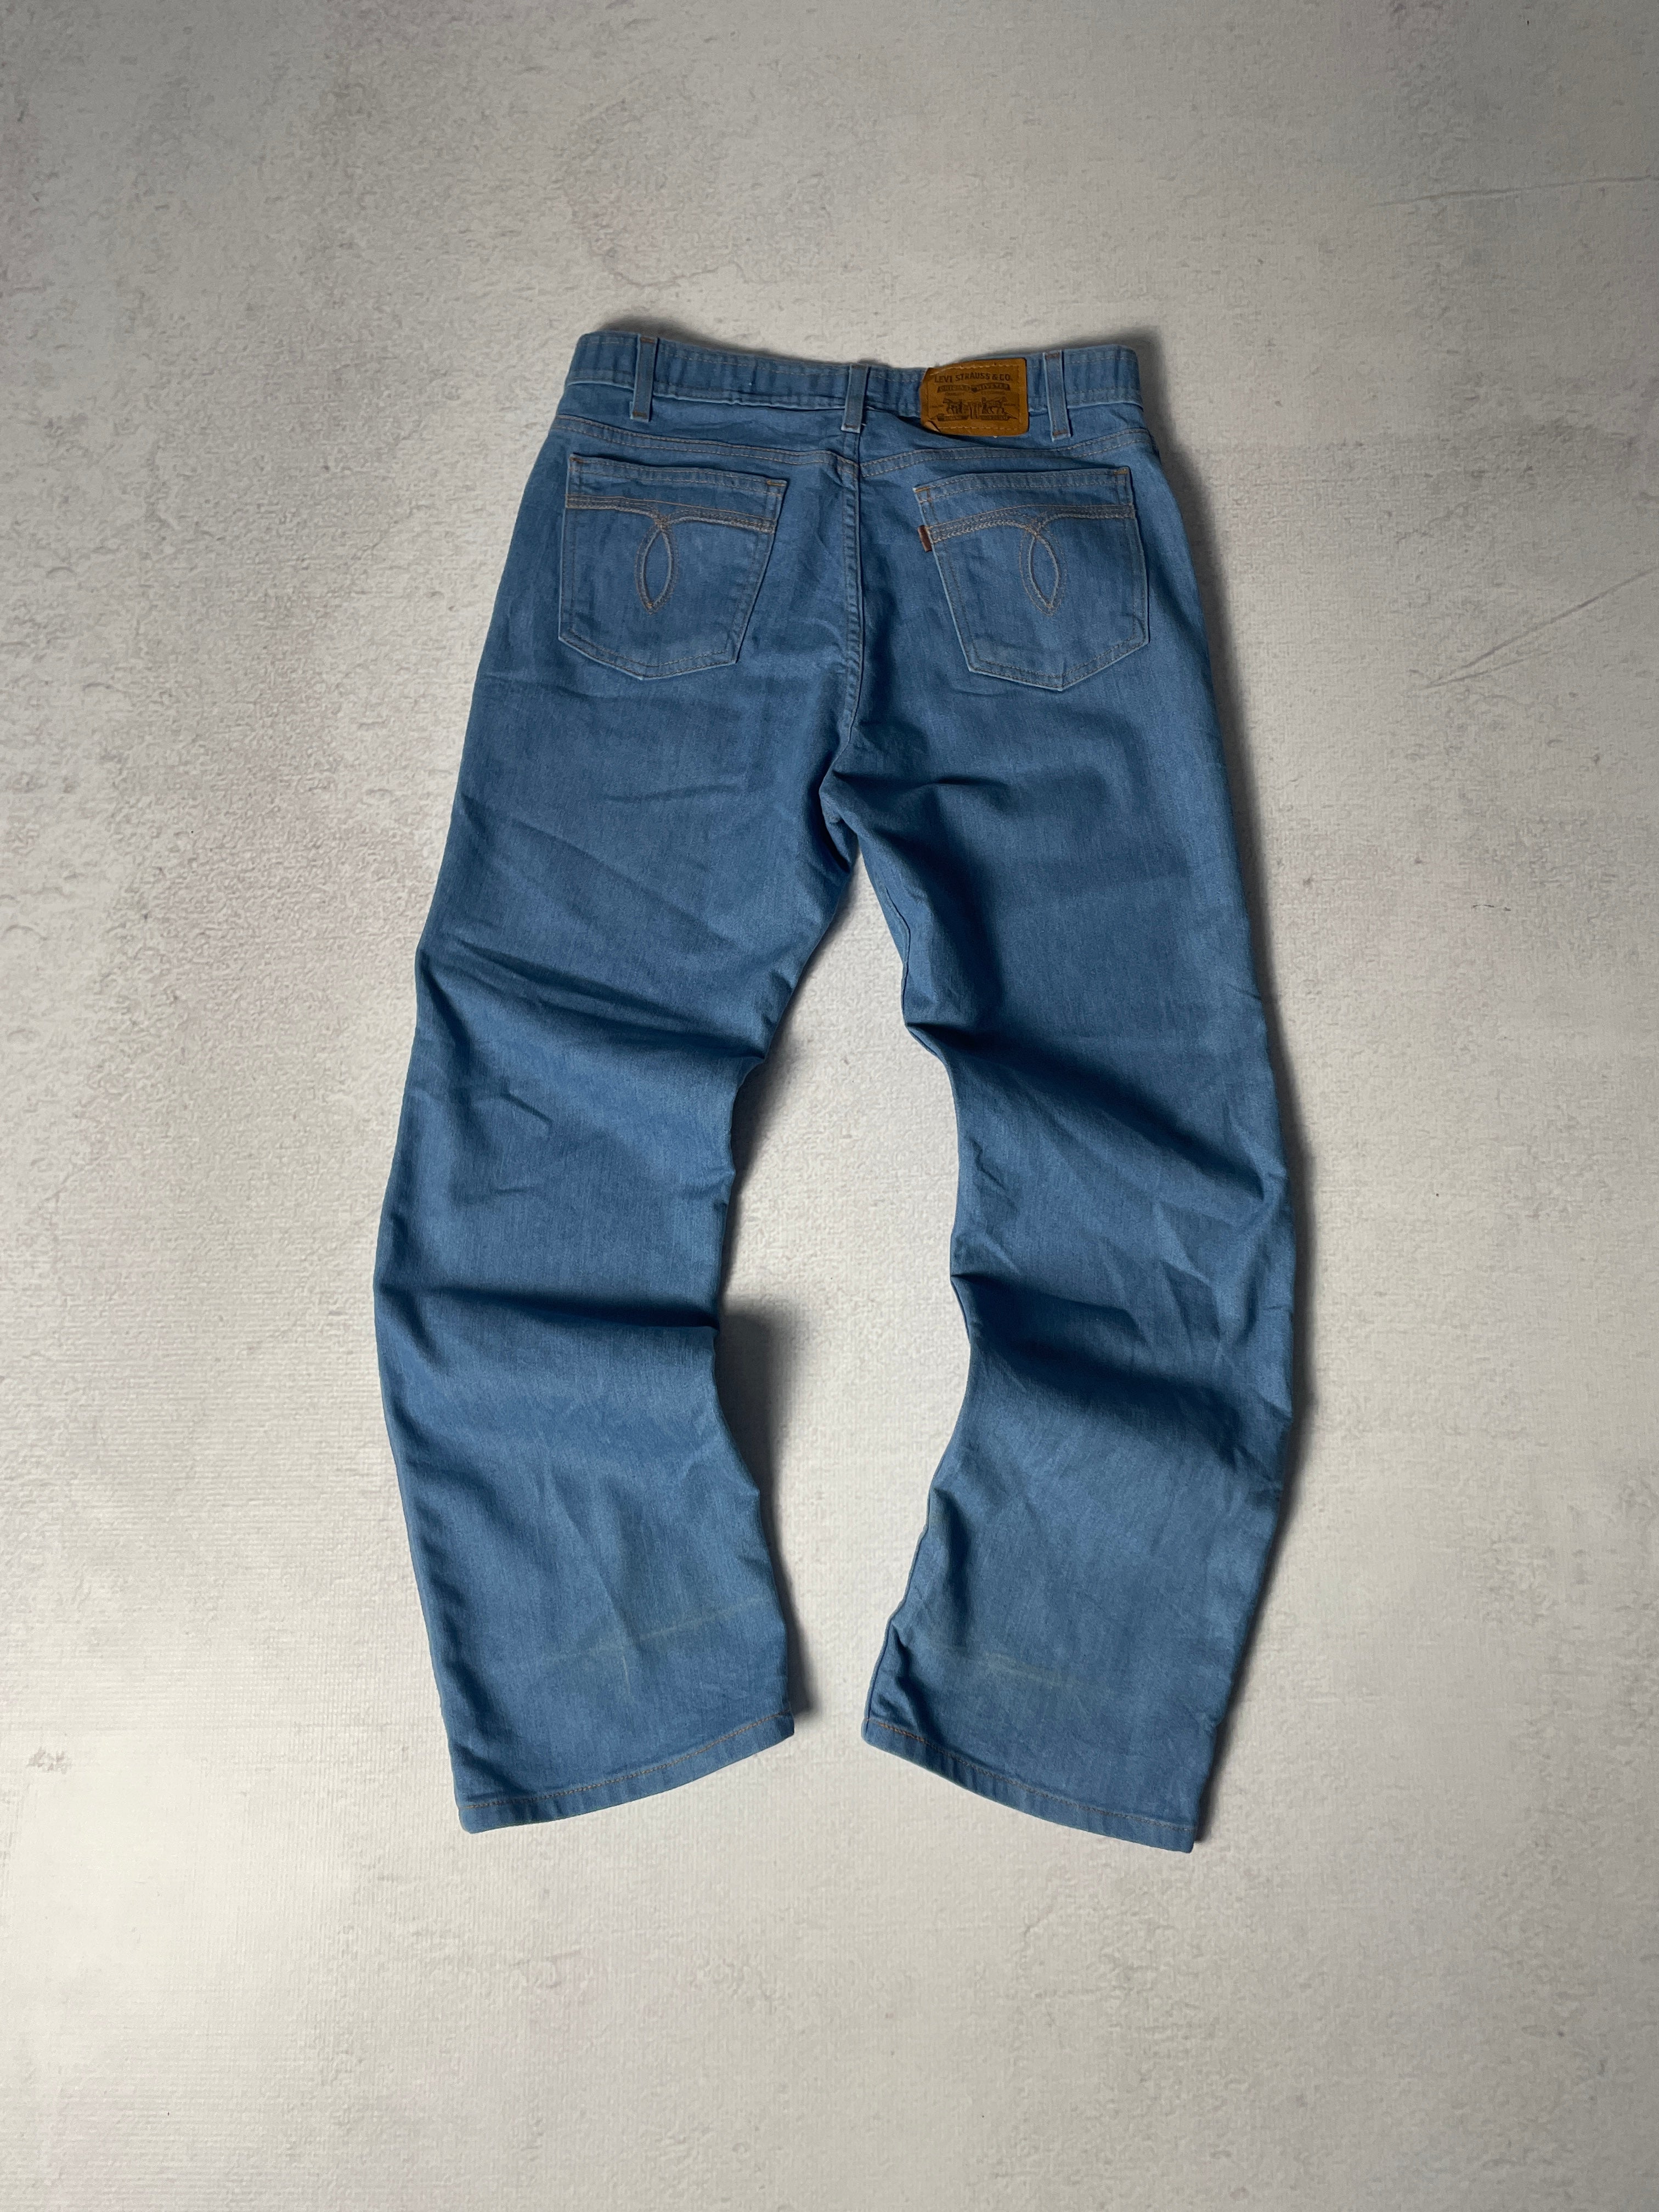 Vintage Levis Brown Tab Jeans - Women's 34Wx30L